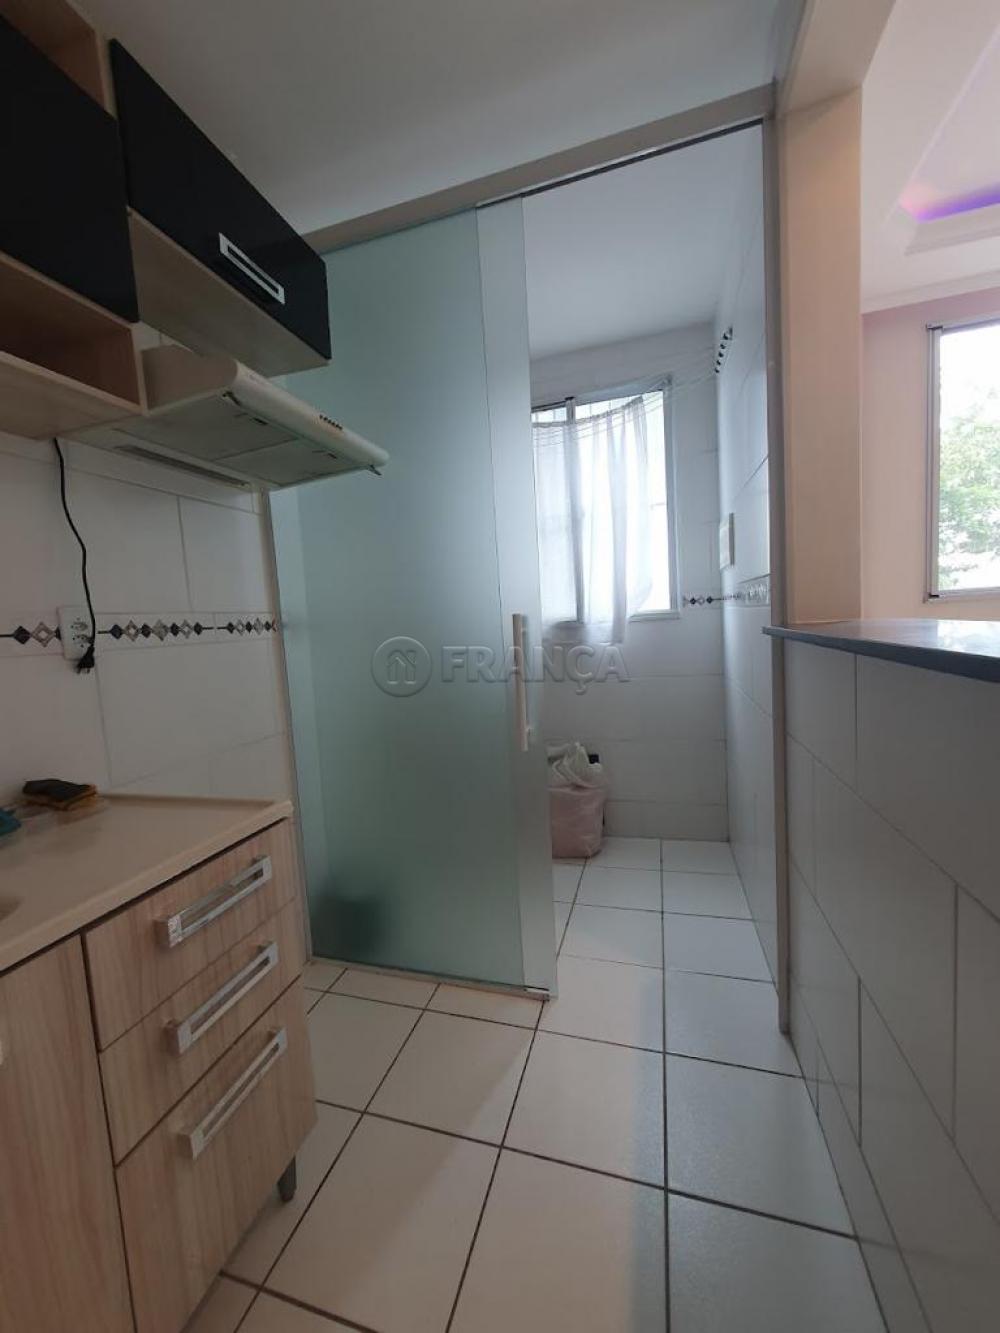 Alugar Apartamento / Padrão em Jacareí R$ 950,00 - Foto 6